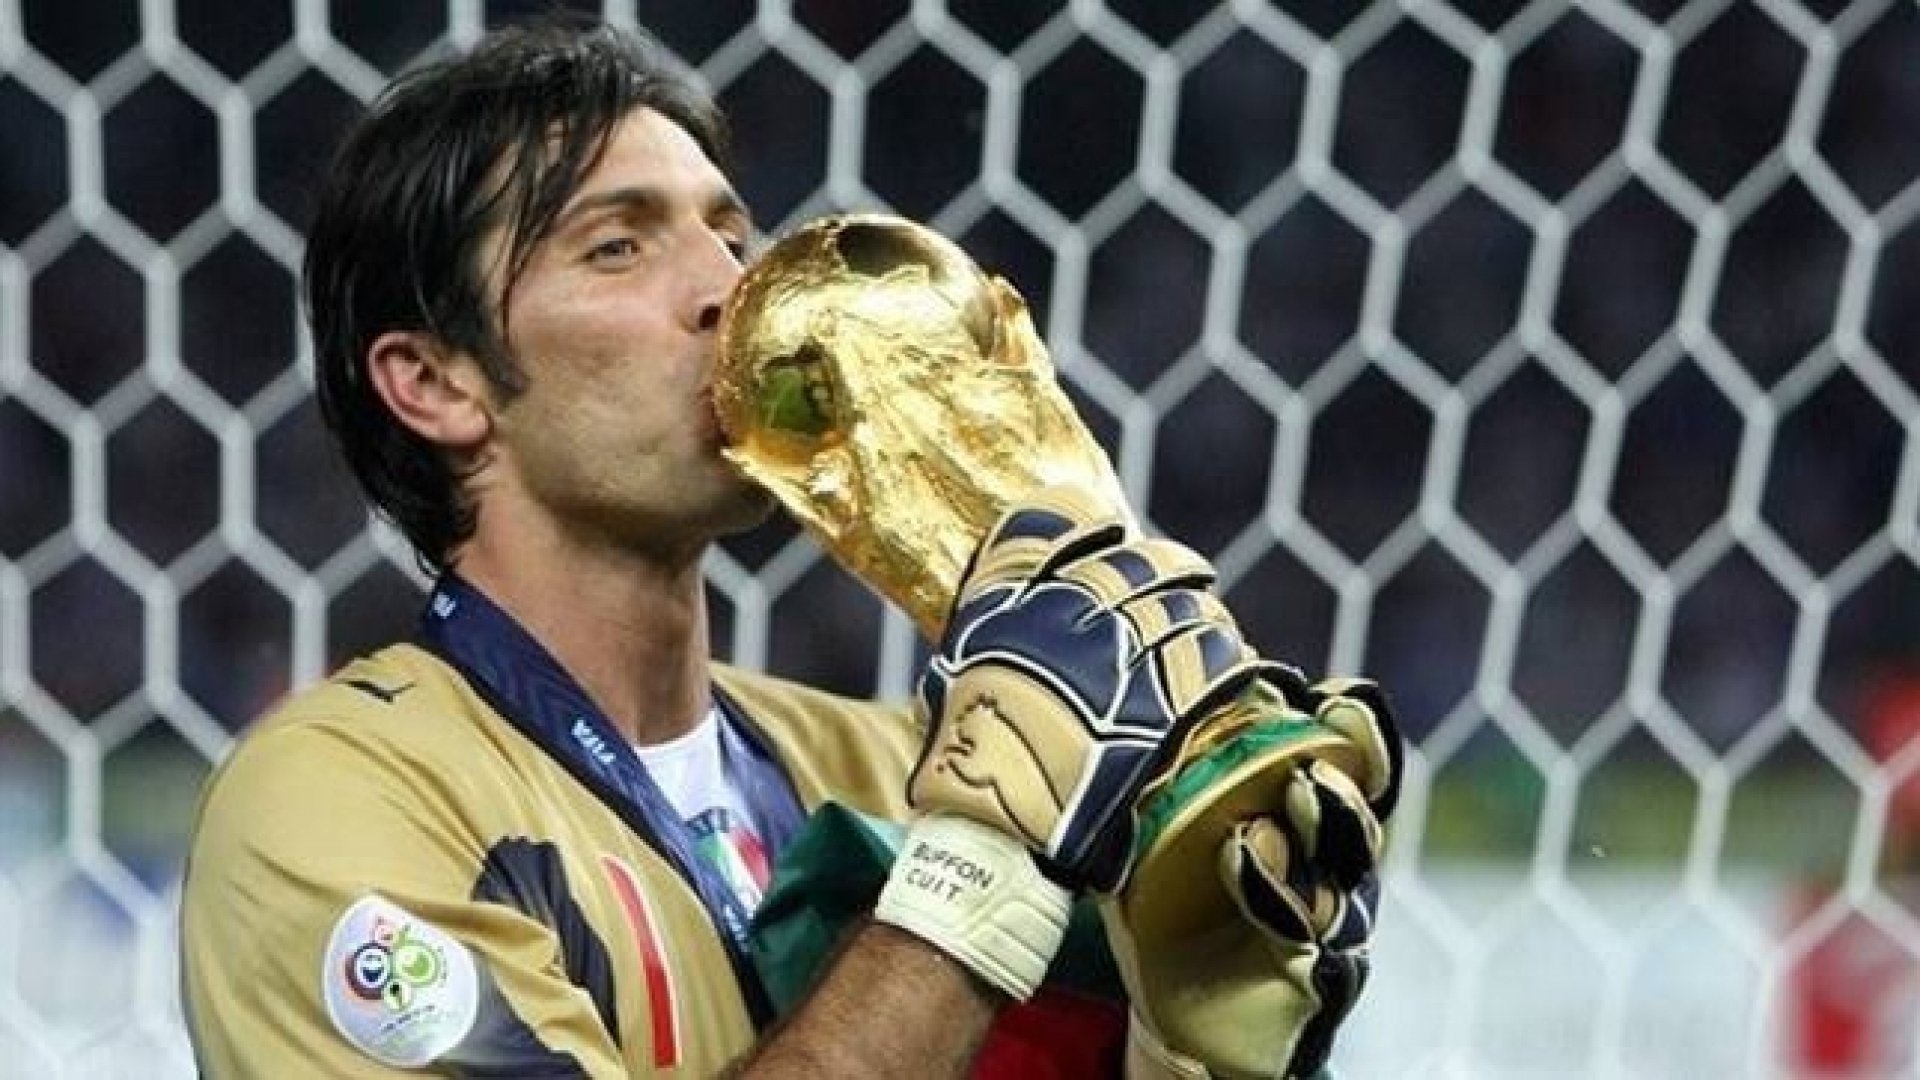 Só ele ficou! Com aposentadoria de De Rossi, Buffon é o único italiano campeão do mundo de 2006 na ativa Jornal MEIA HORA - Esportes